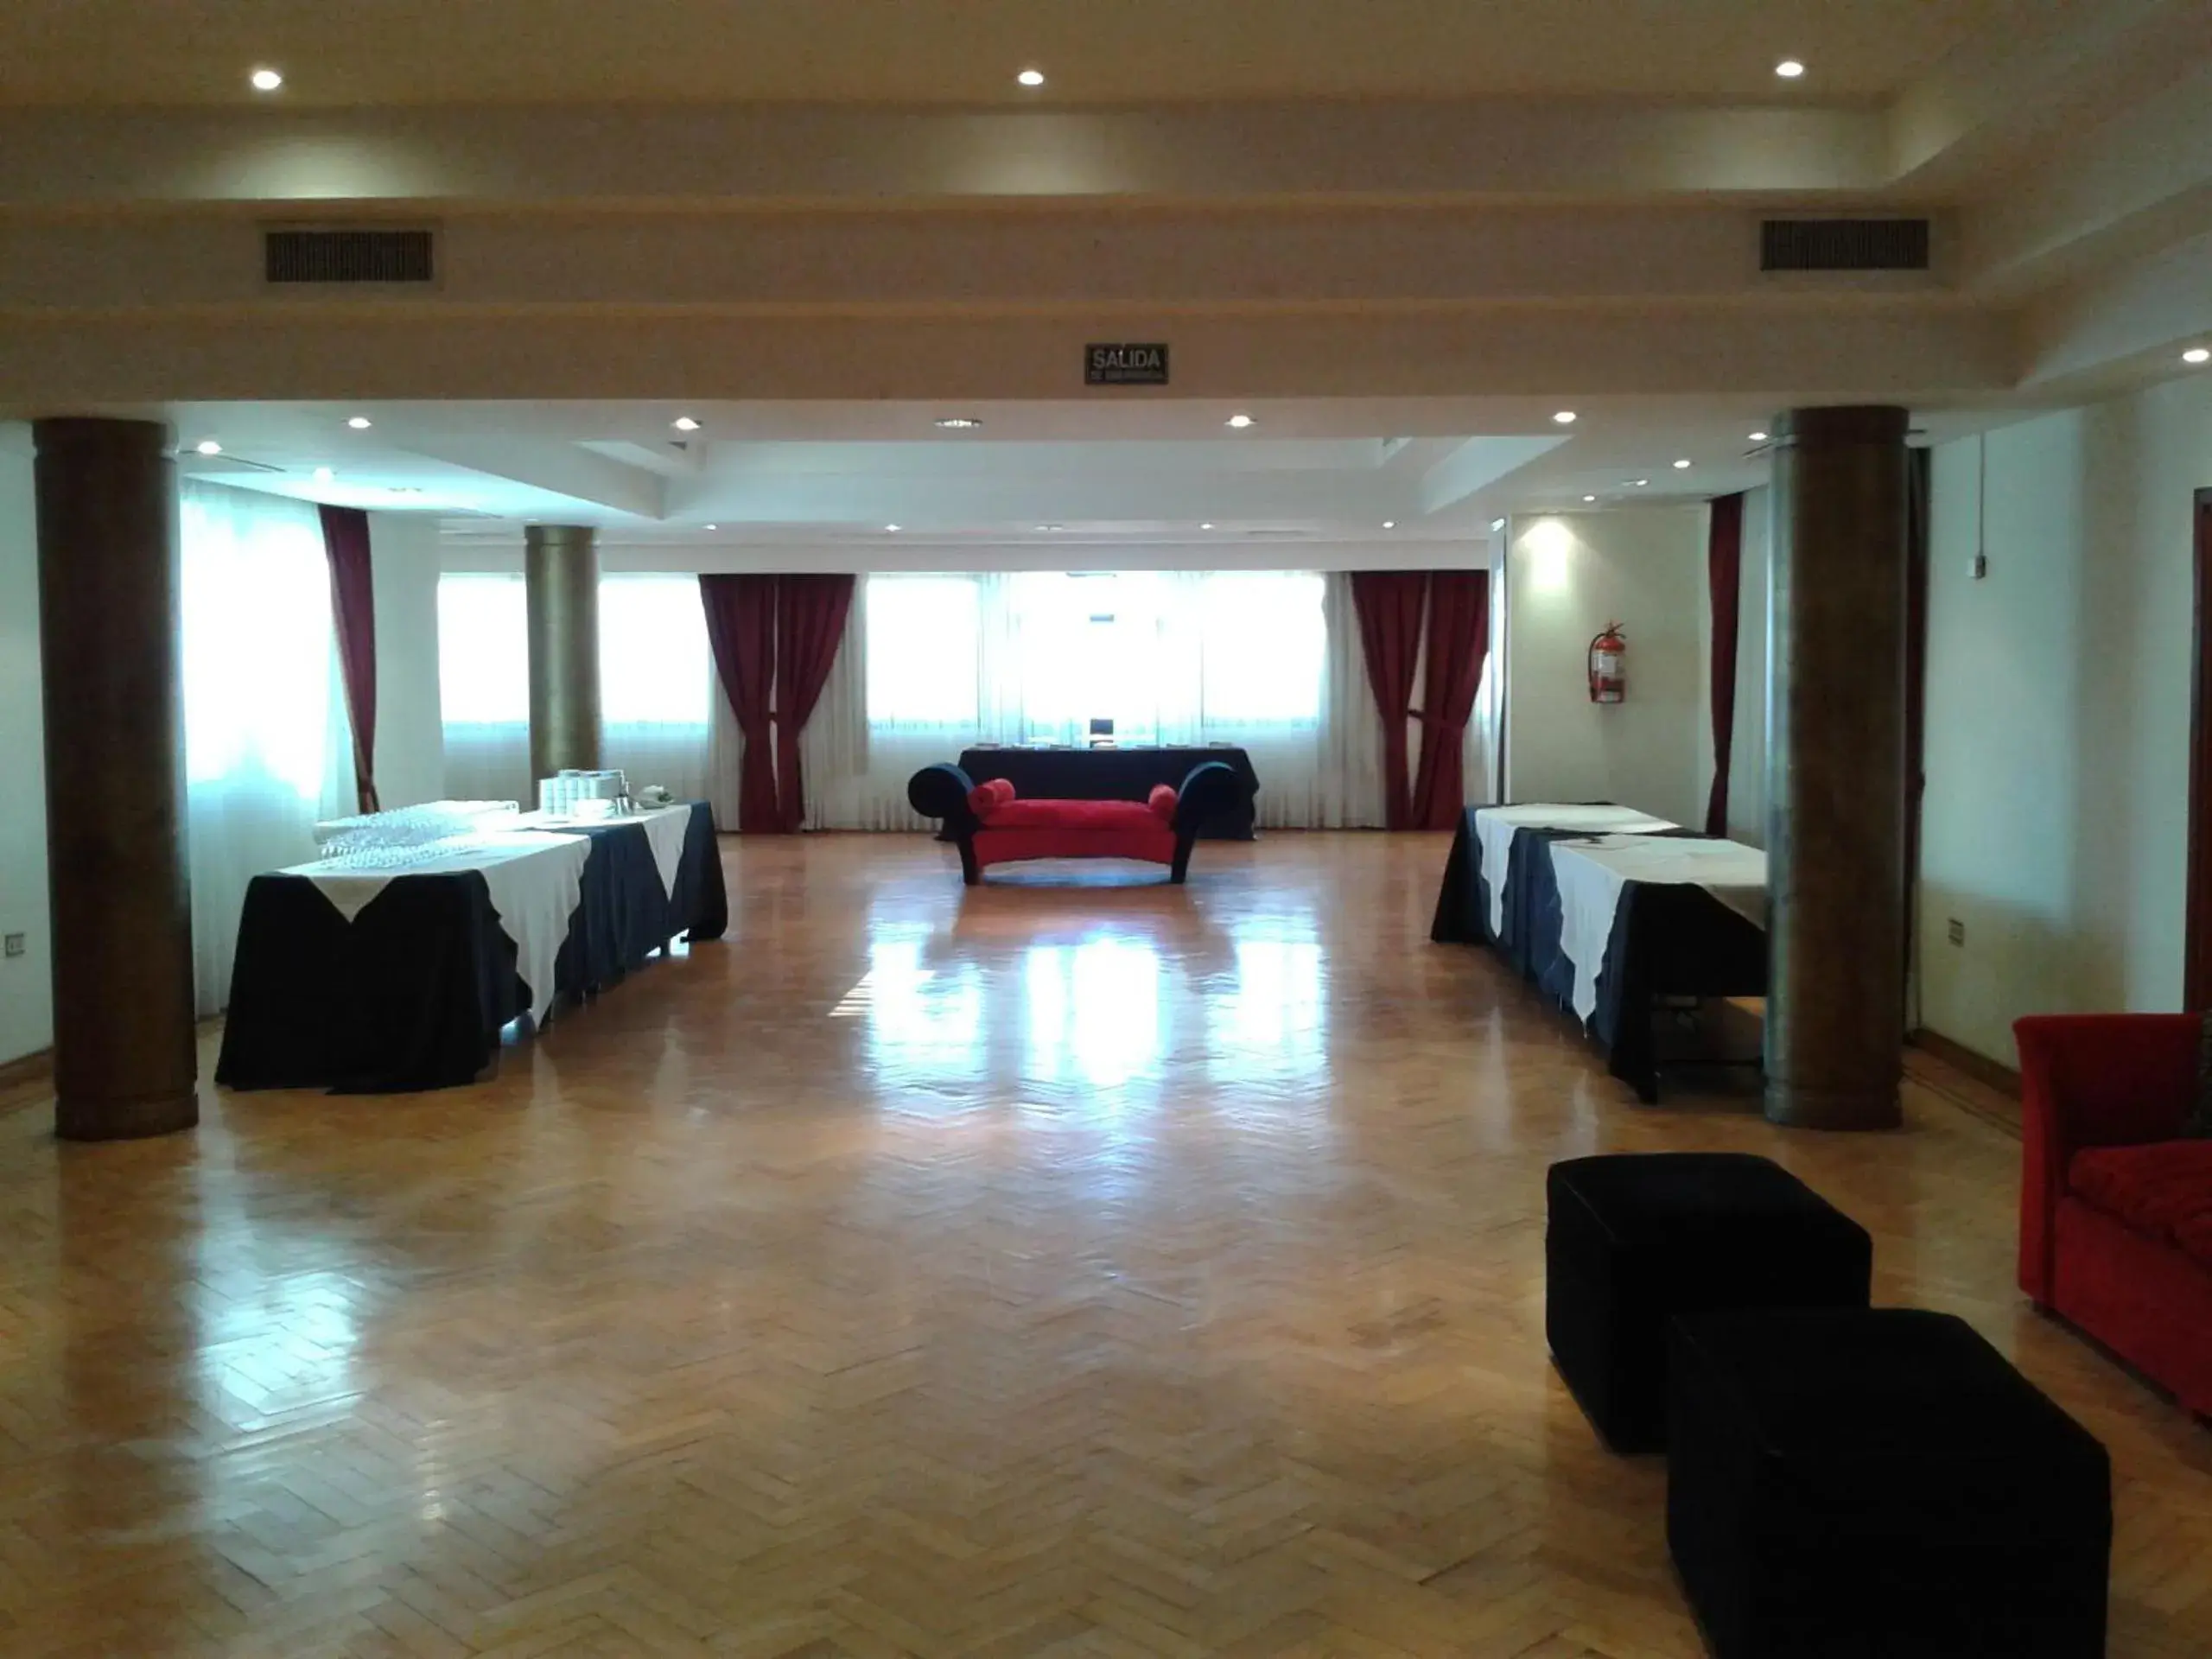 Banquet/Function facilities, Banquet Facilities in Gran Hotel Presidente